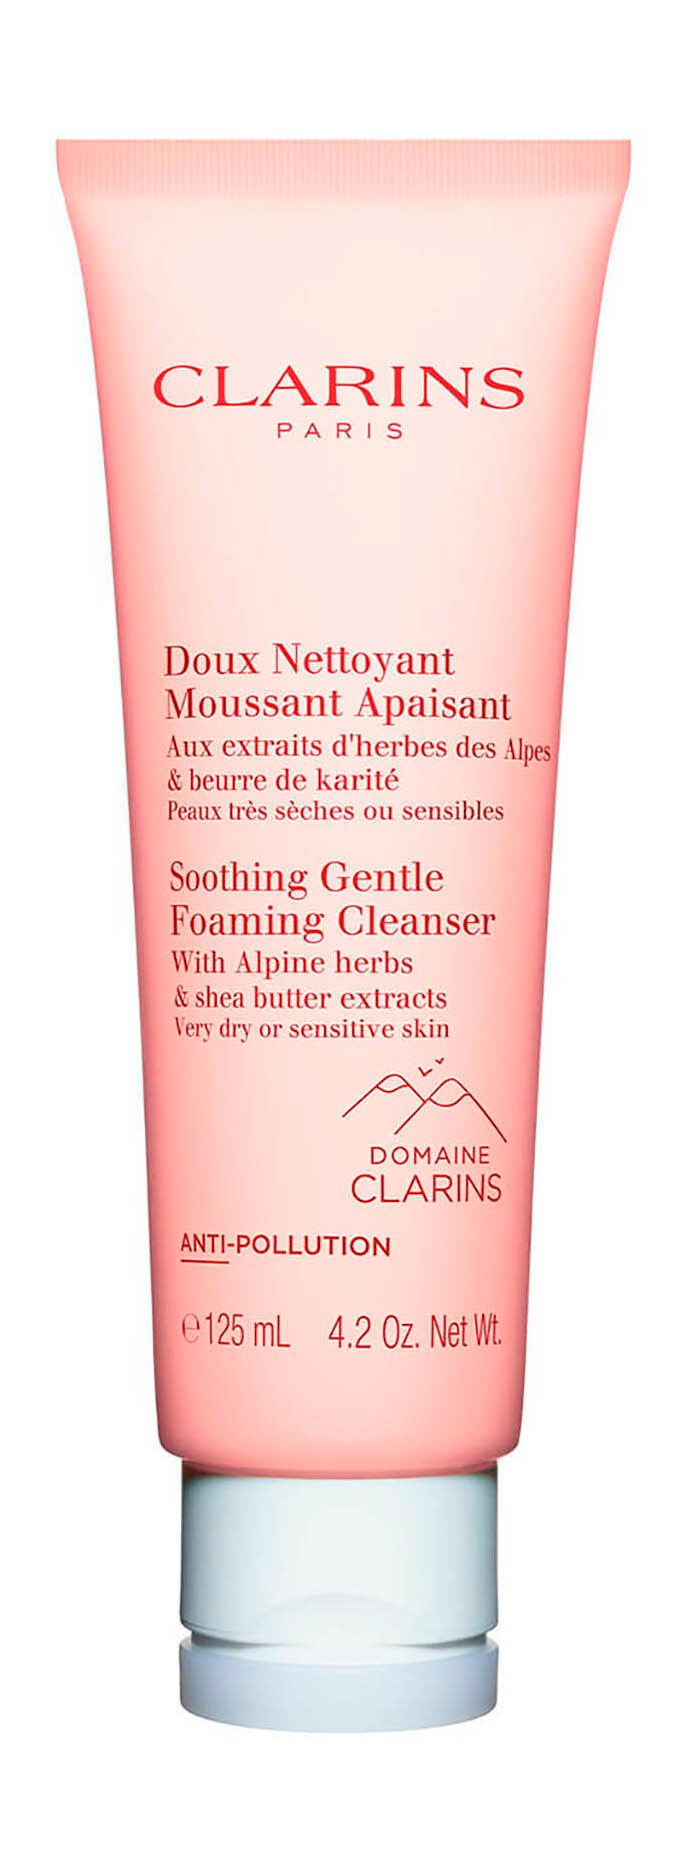 Очищающий пенящийся крем для очень сухой и чувствительной кожи Clarins Soothing Gentle Foaming Cleanser /125 мл/гр.